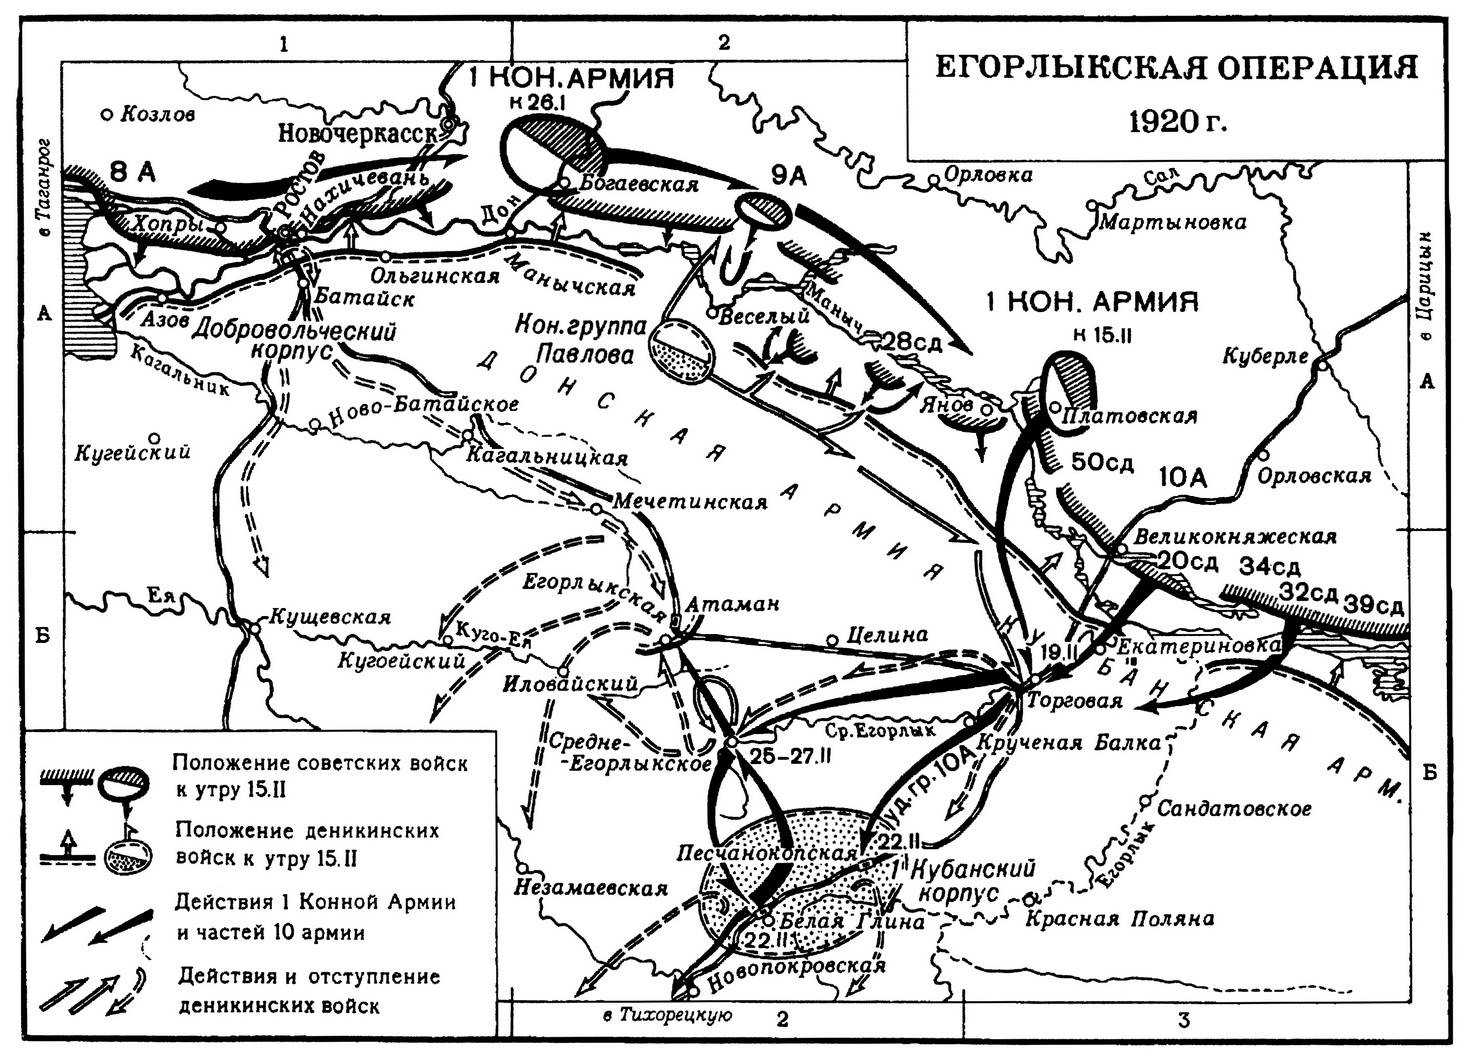 Белая армия фронты. Доно-Манычская операция (1920). Егорлыкское сражение 1920 на карте. Егорлыкская битва гражданской войны.